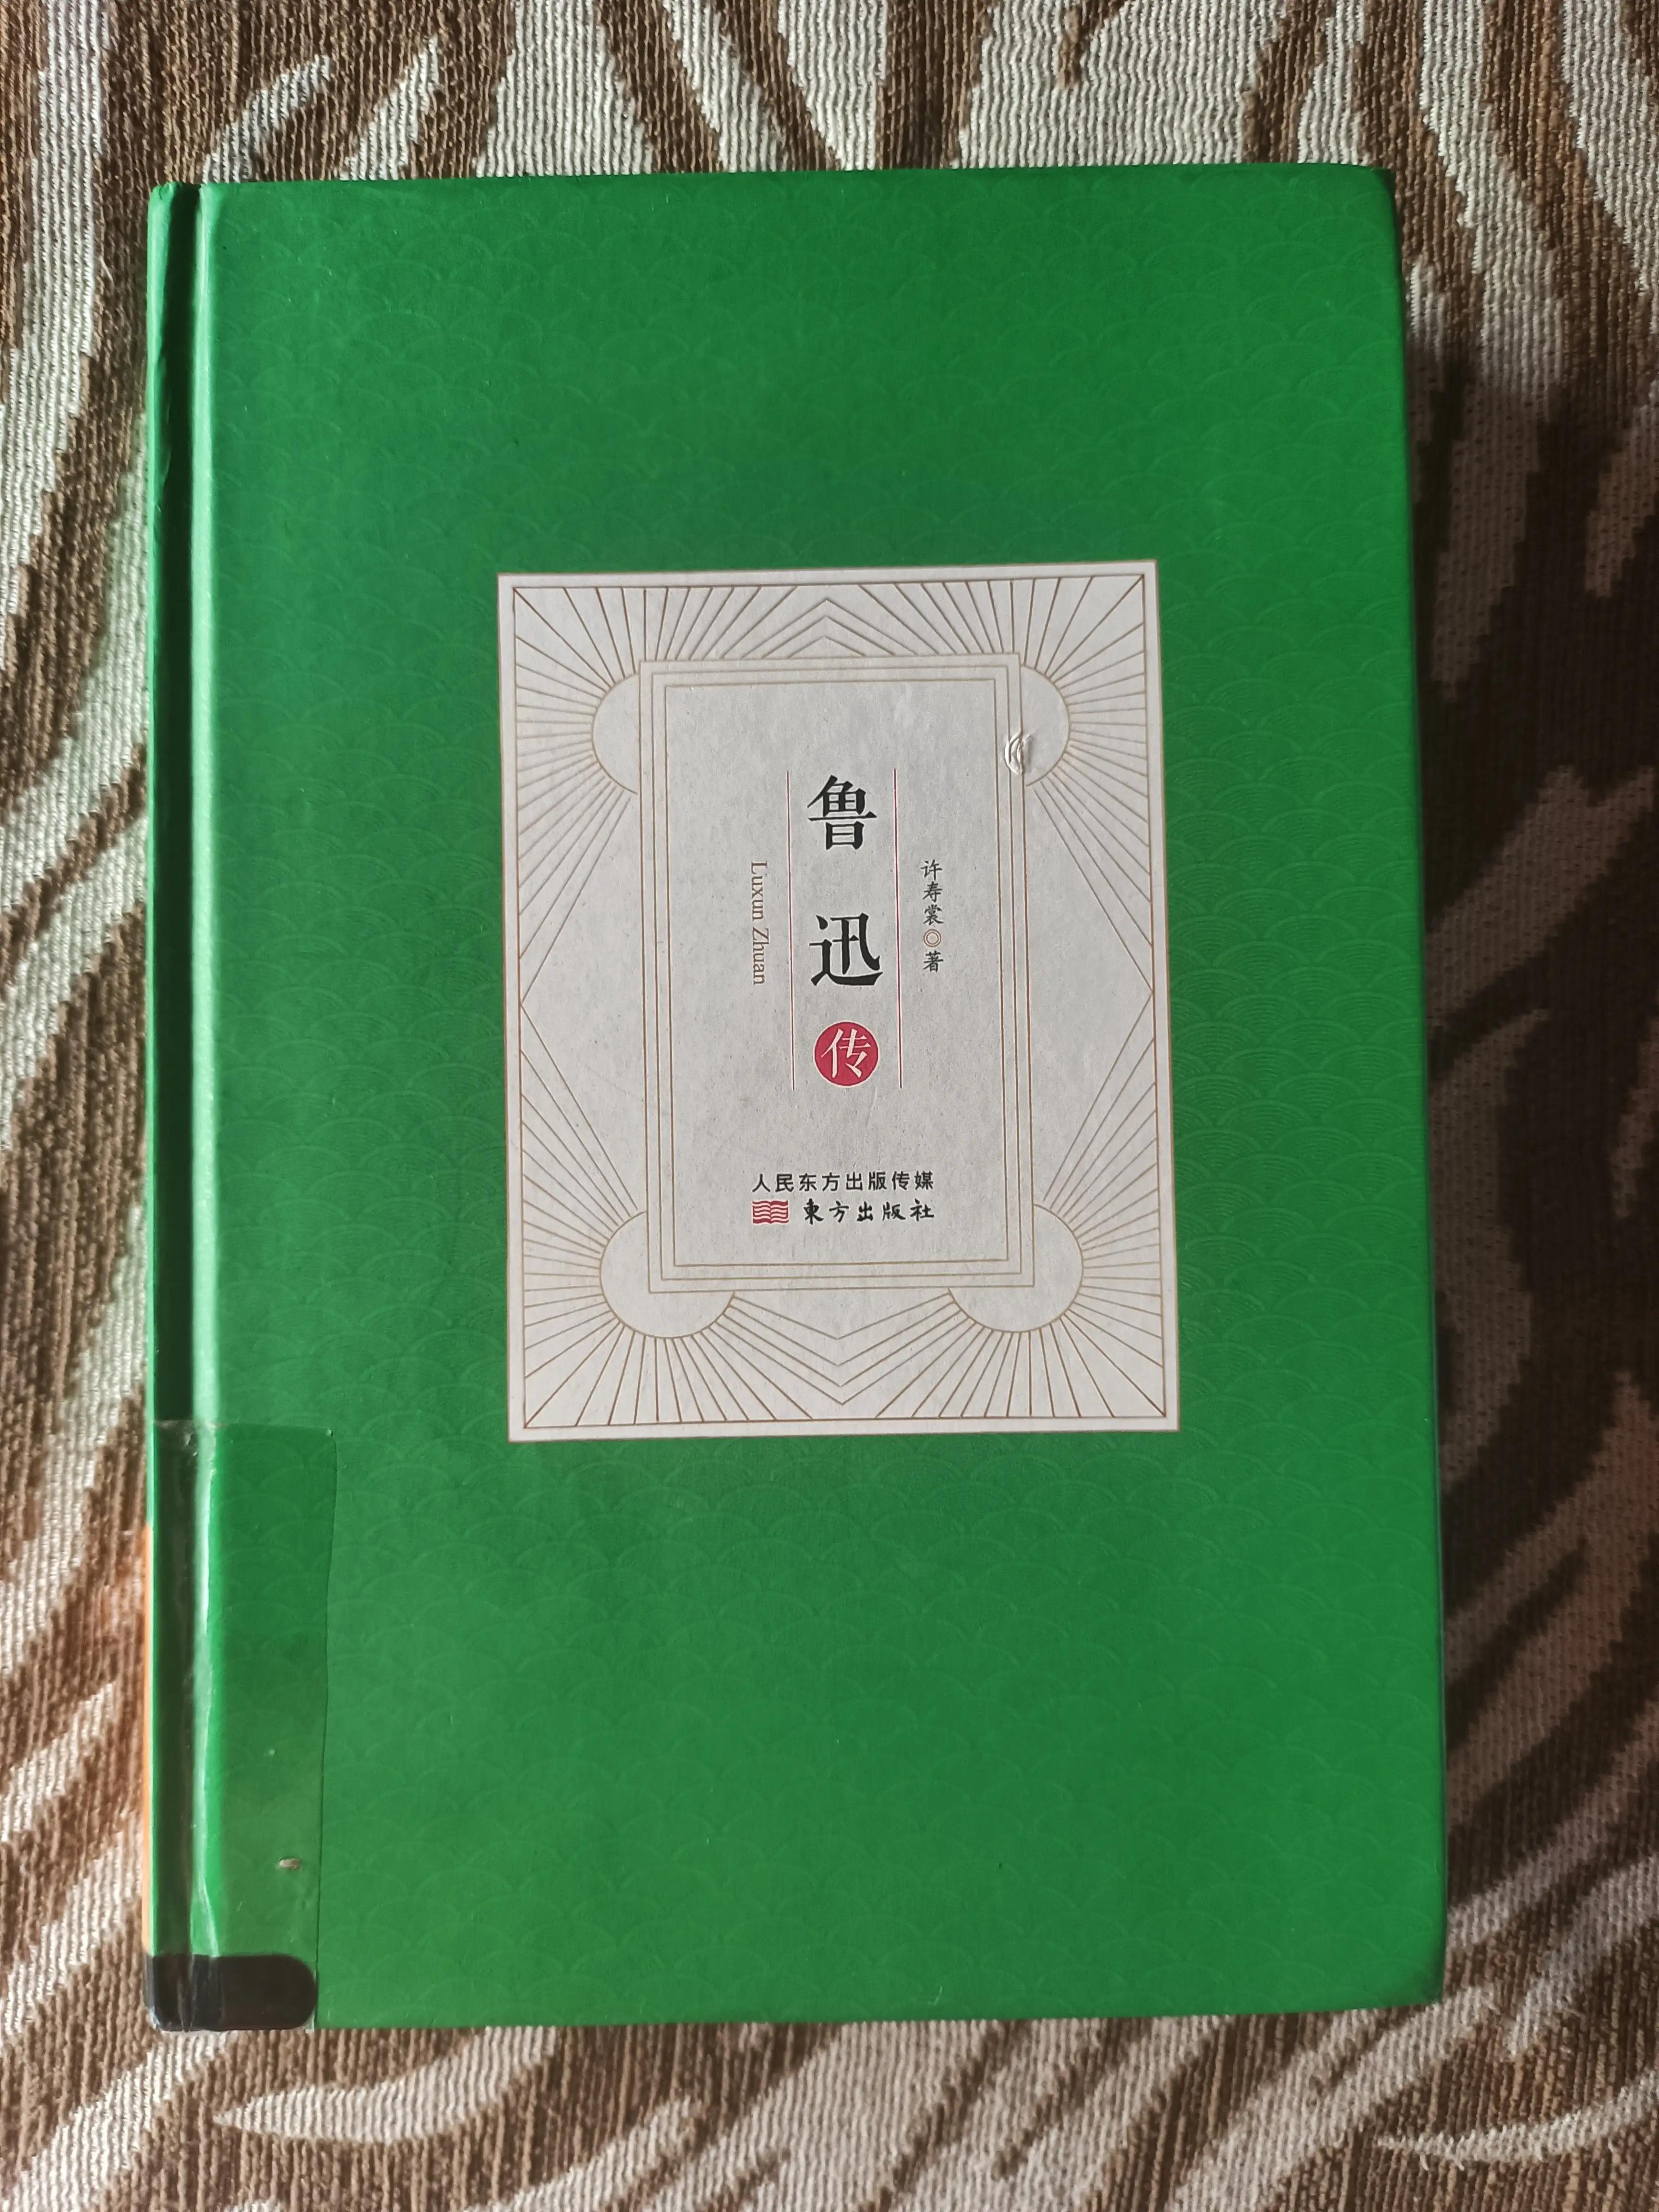 许寿裳的《鲁迅传》是了解一个真实的鲁迅先生的好书